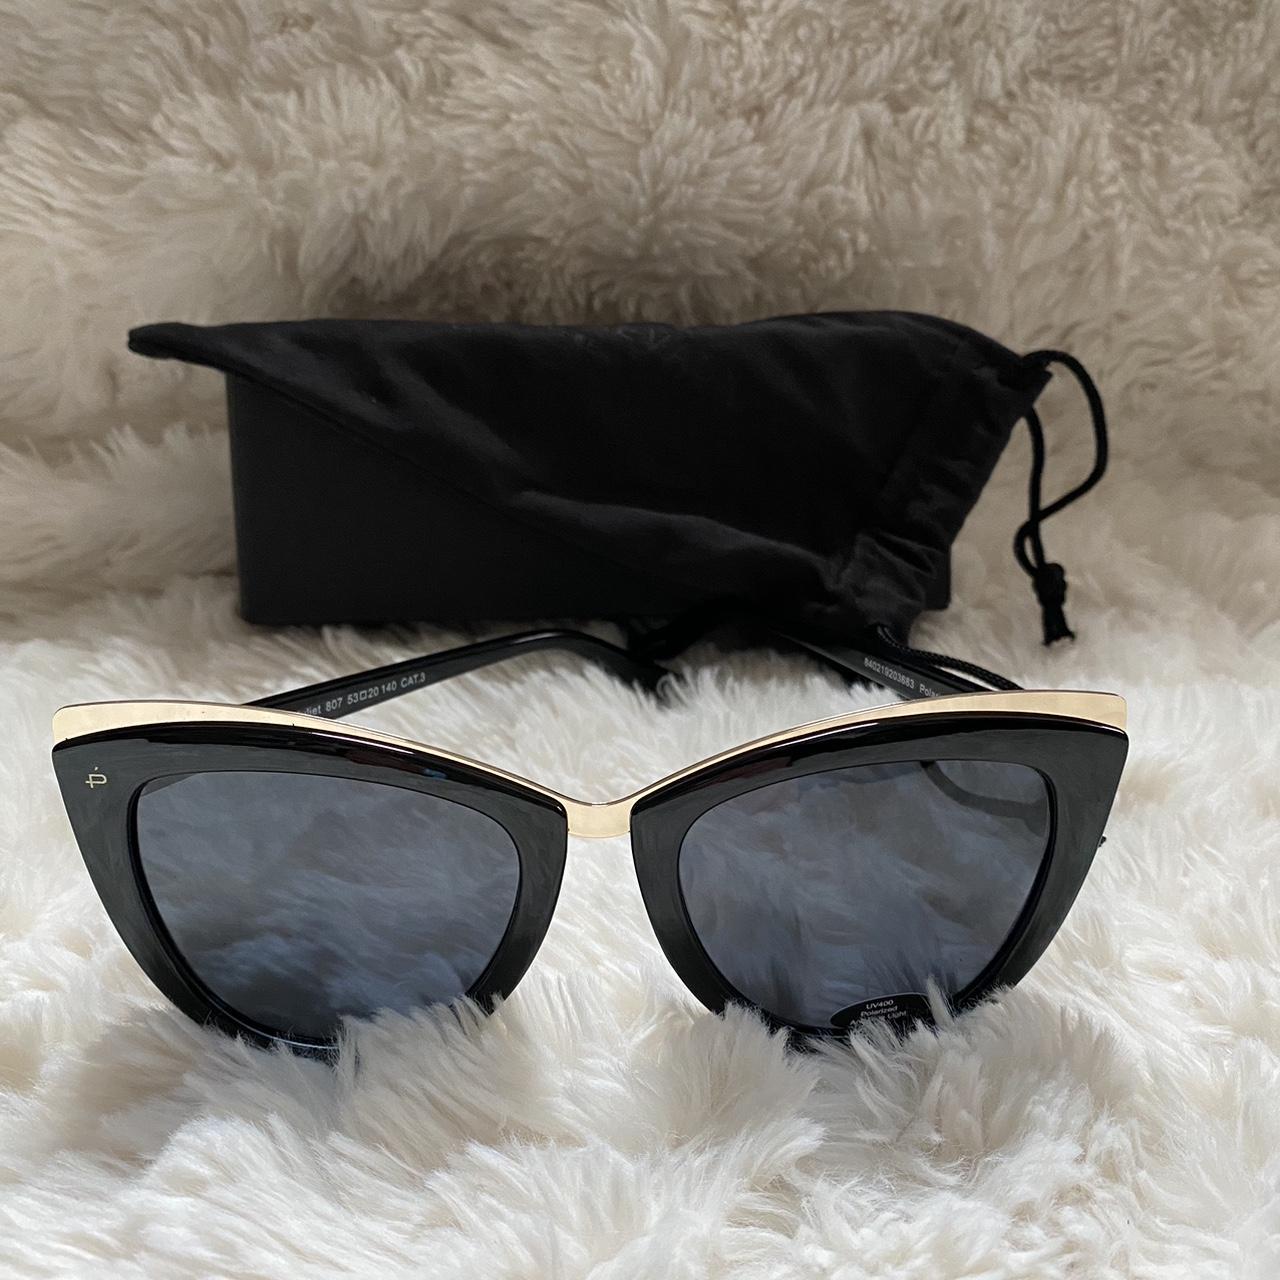 Black Sunglasses Privé Revaux eye wear, The Juliet... - Depop